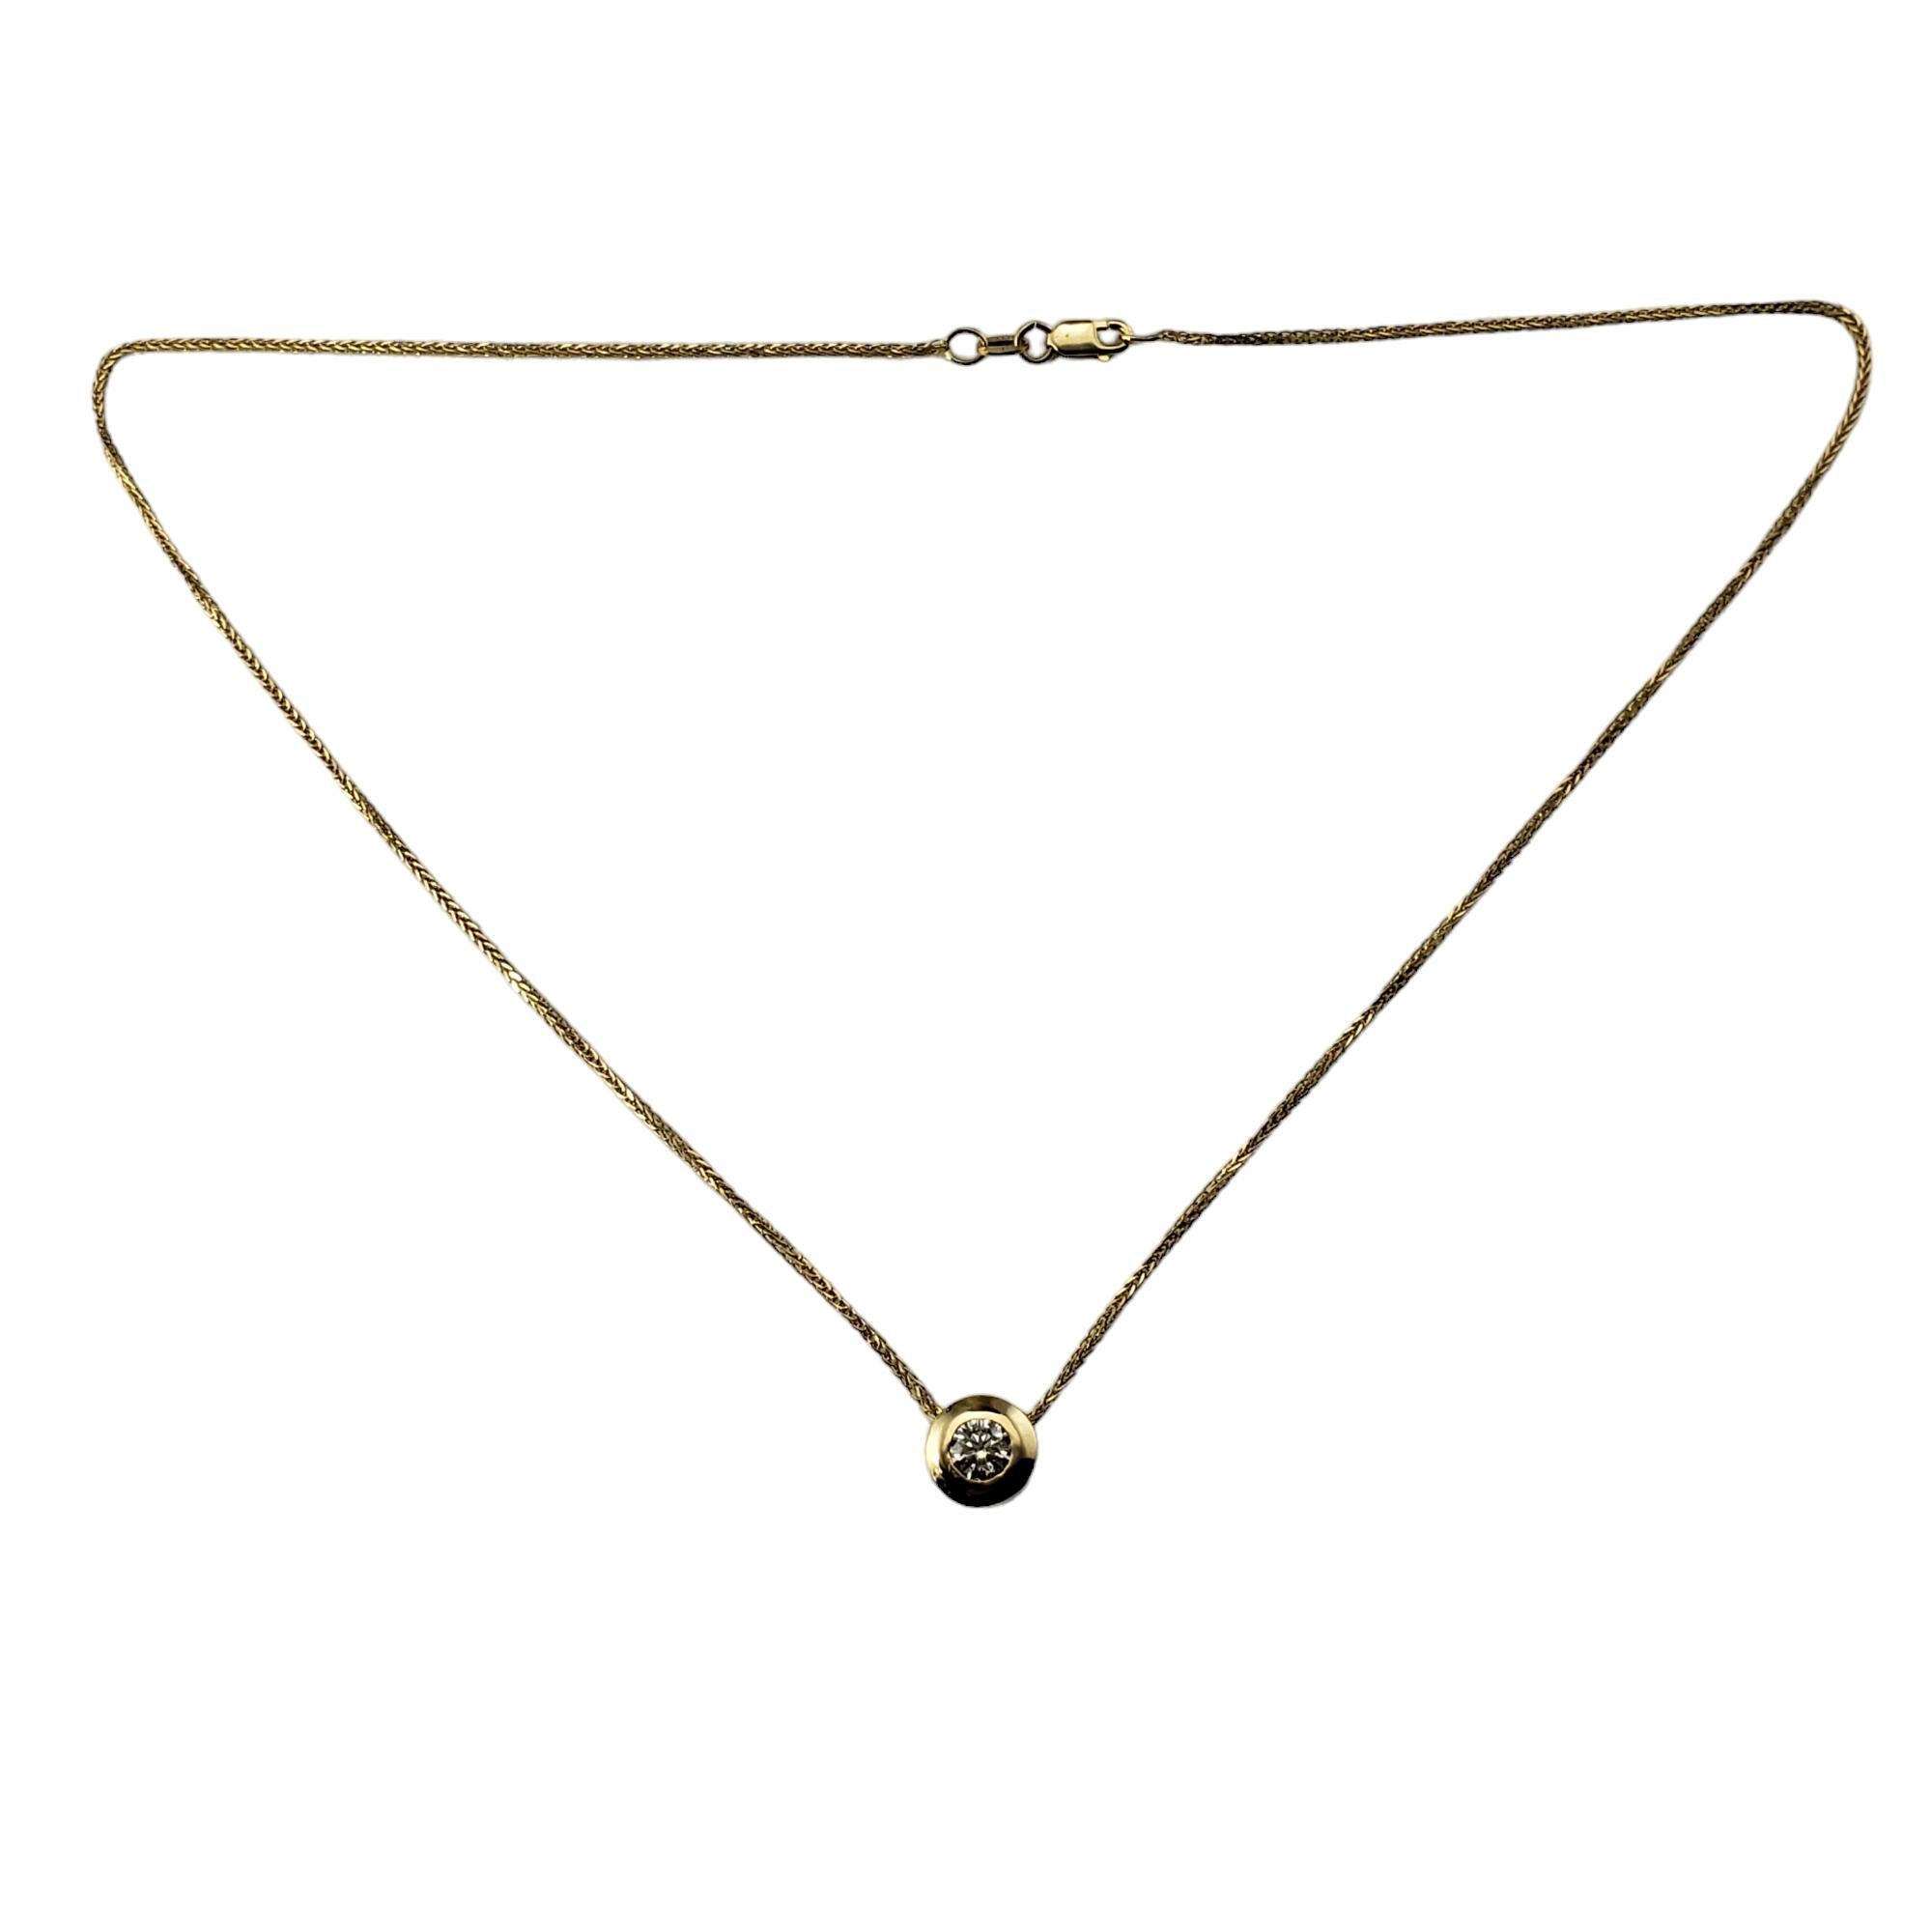 Vintage 14K Yellow Gold Diamond Solitaire Pendant Necklace-

Ce collier pendentif étincelant est orné d'un diamant rond de taille brillant serti dans de l'or jaune 14K classique. 

Poids total approximatif des diamants : 45 ct.

Couleur du diamant :